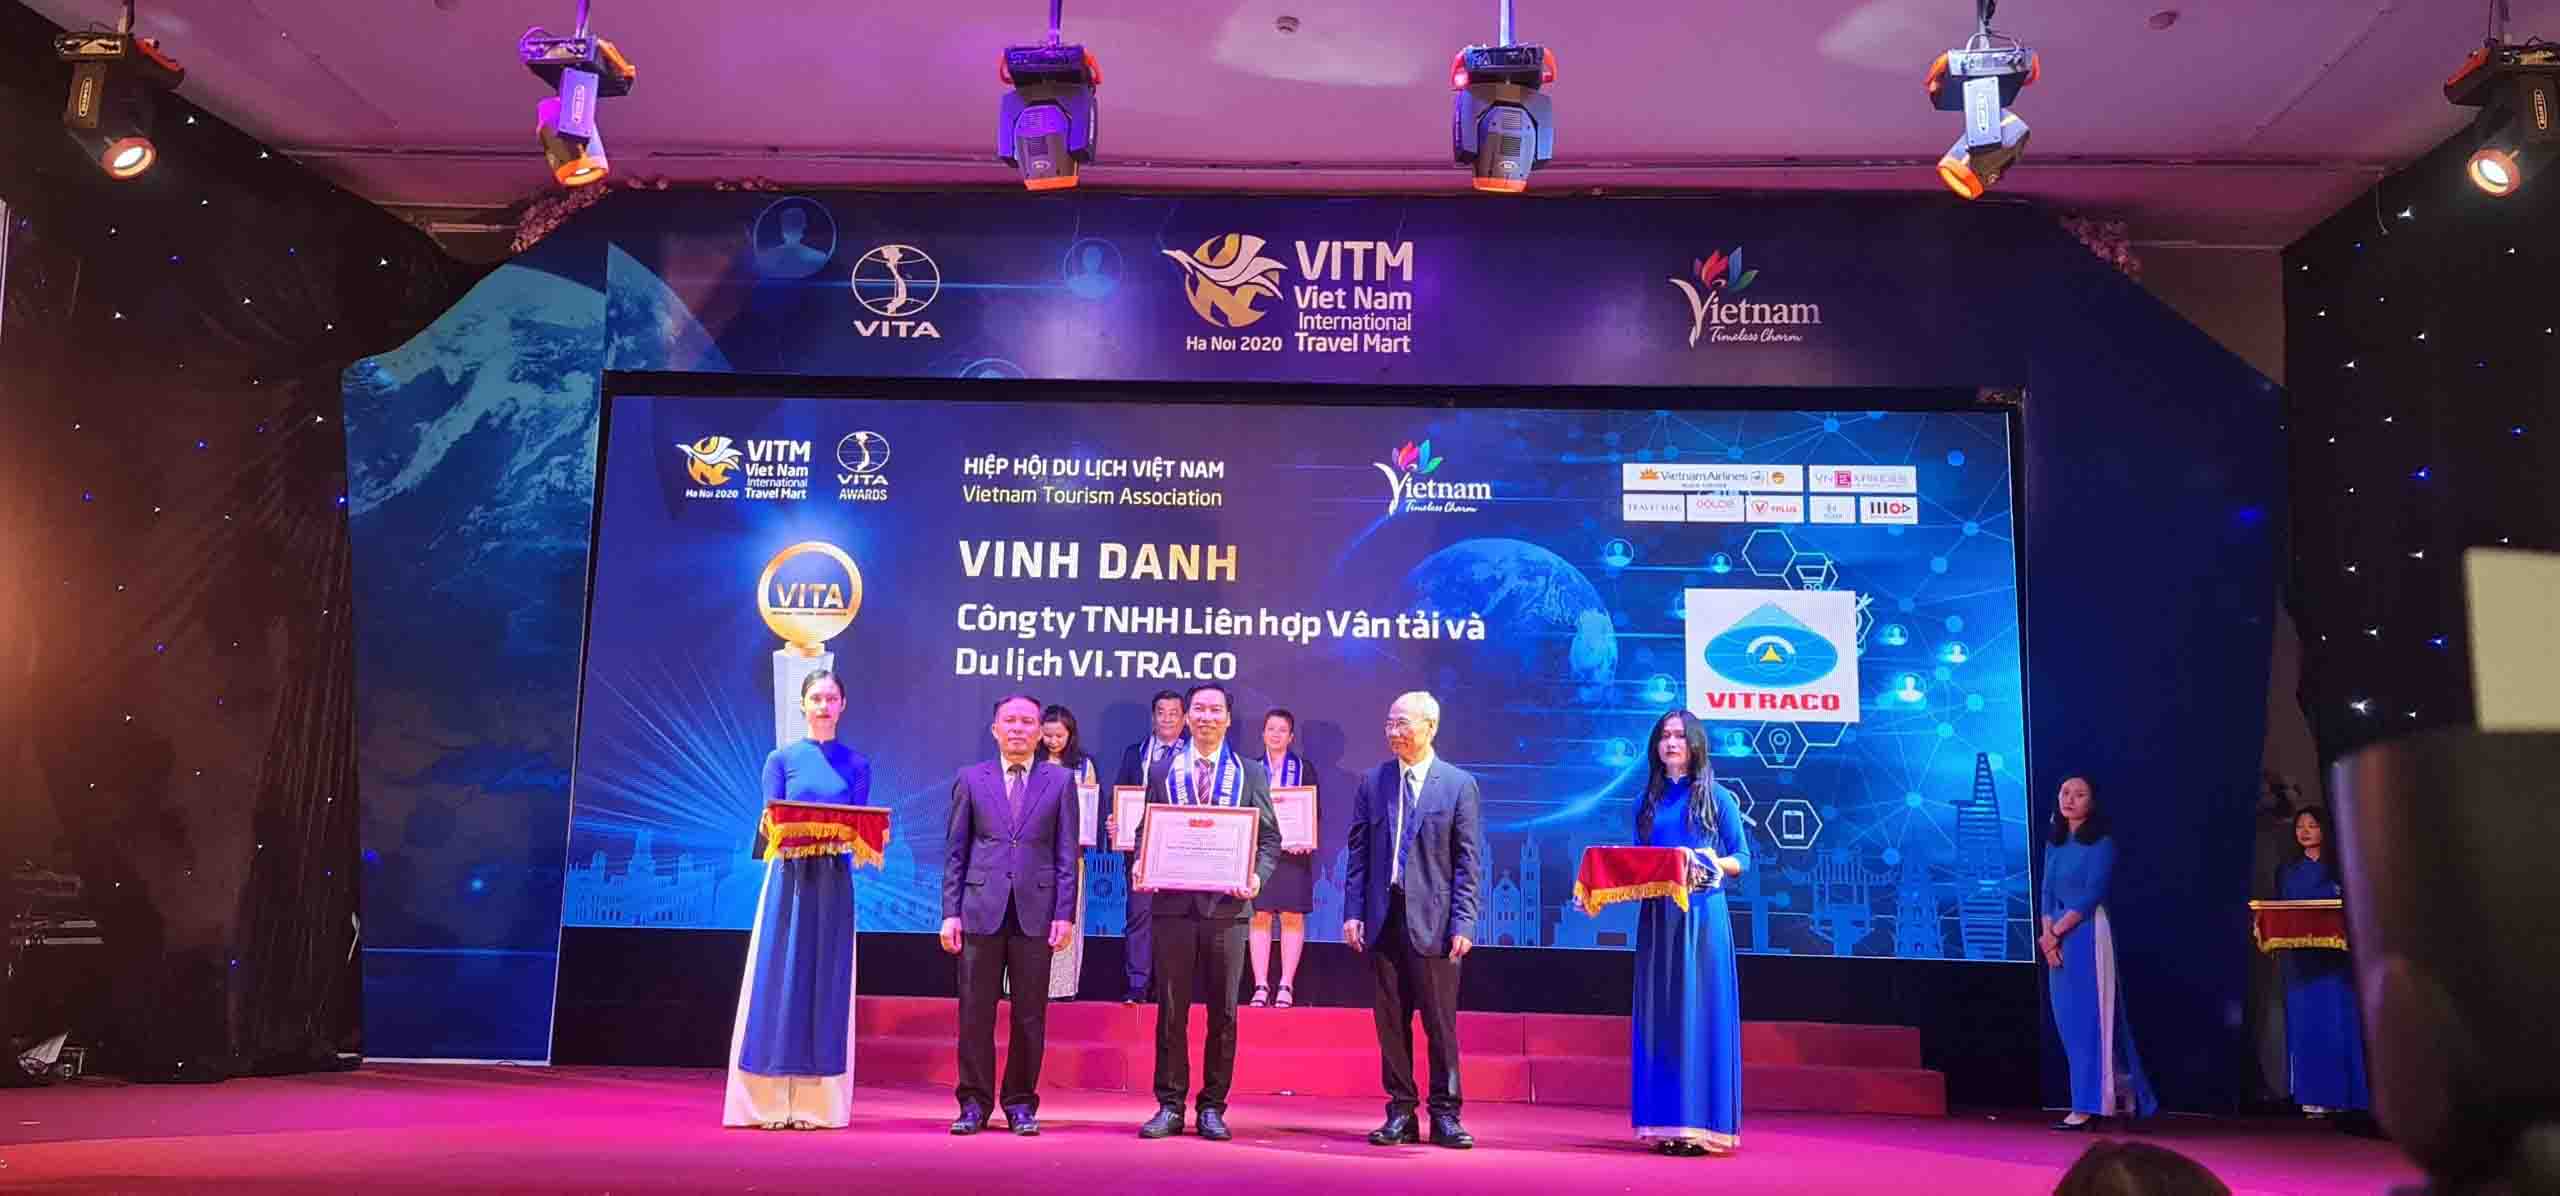 VITRACO – Doanh nghiệp Kinh doanh Vận chuyển khách du lịch hàng đầu Việt Nam 2019